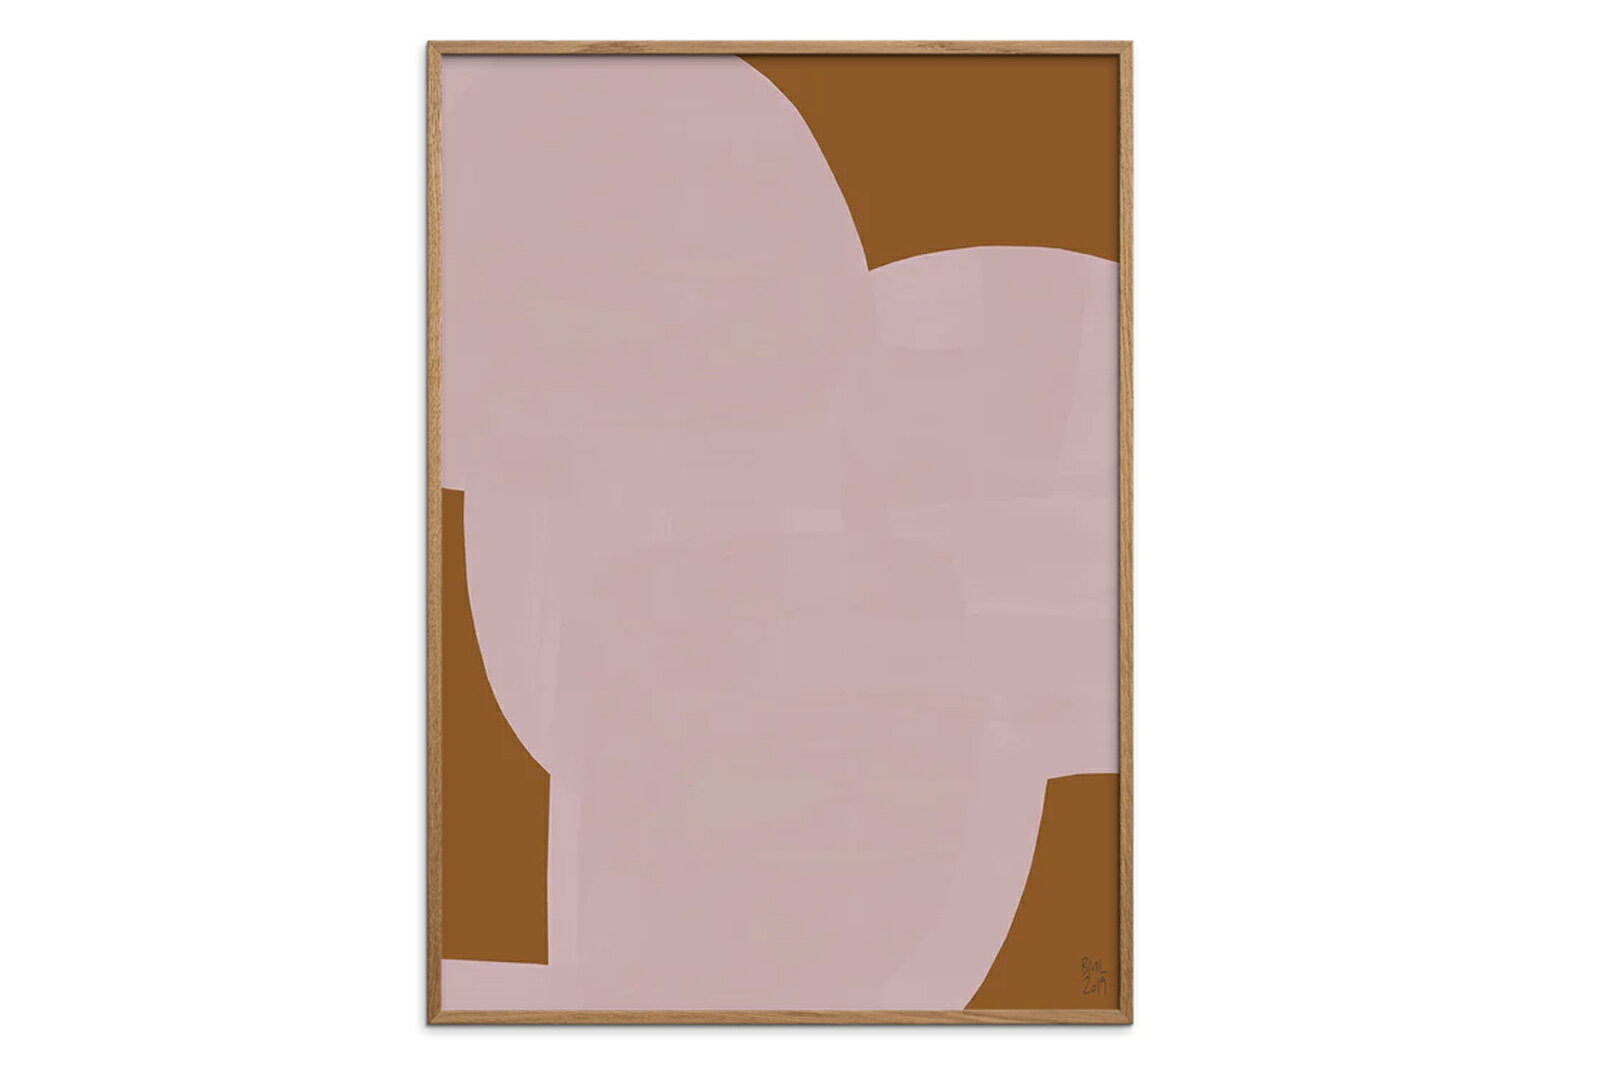 【アートポスター】庭で絵を描くモネ (60cm×80cm) -ルノアール- おしゃれインテリアに(余白部分無し)